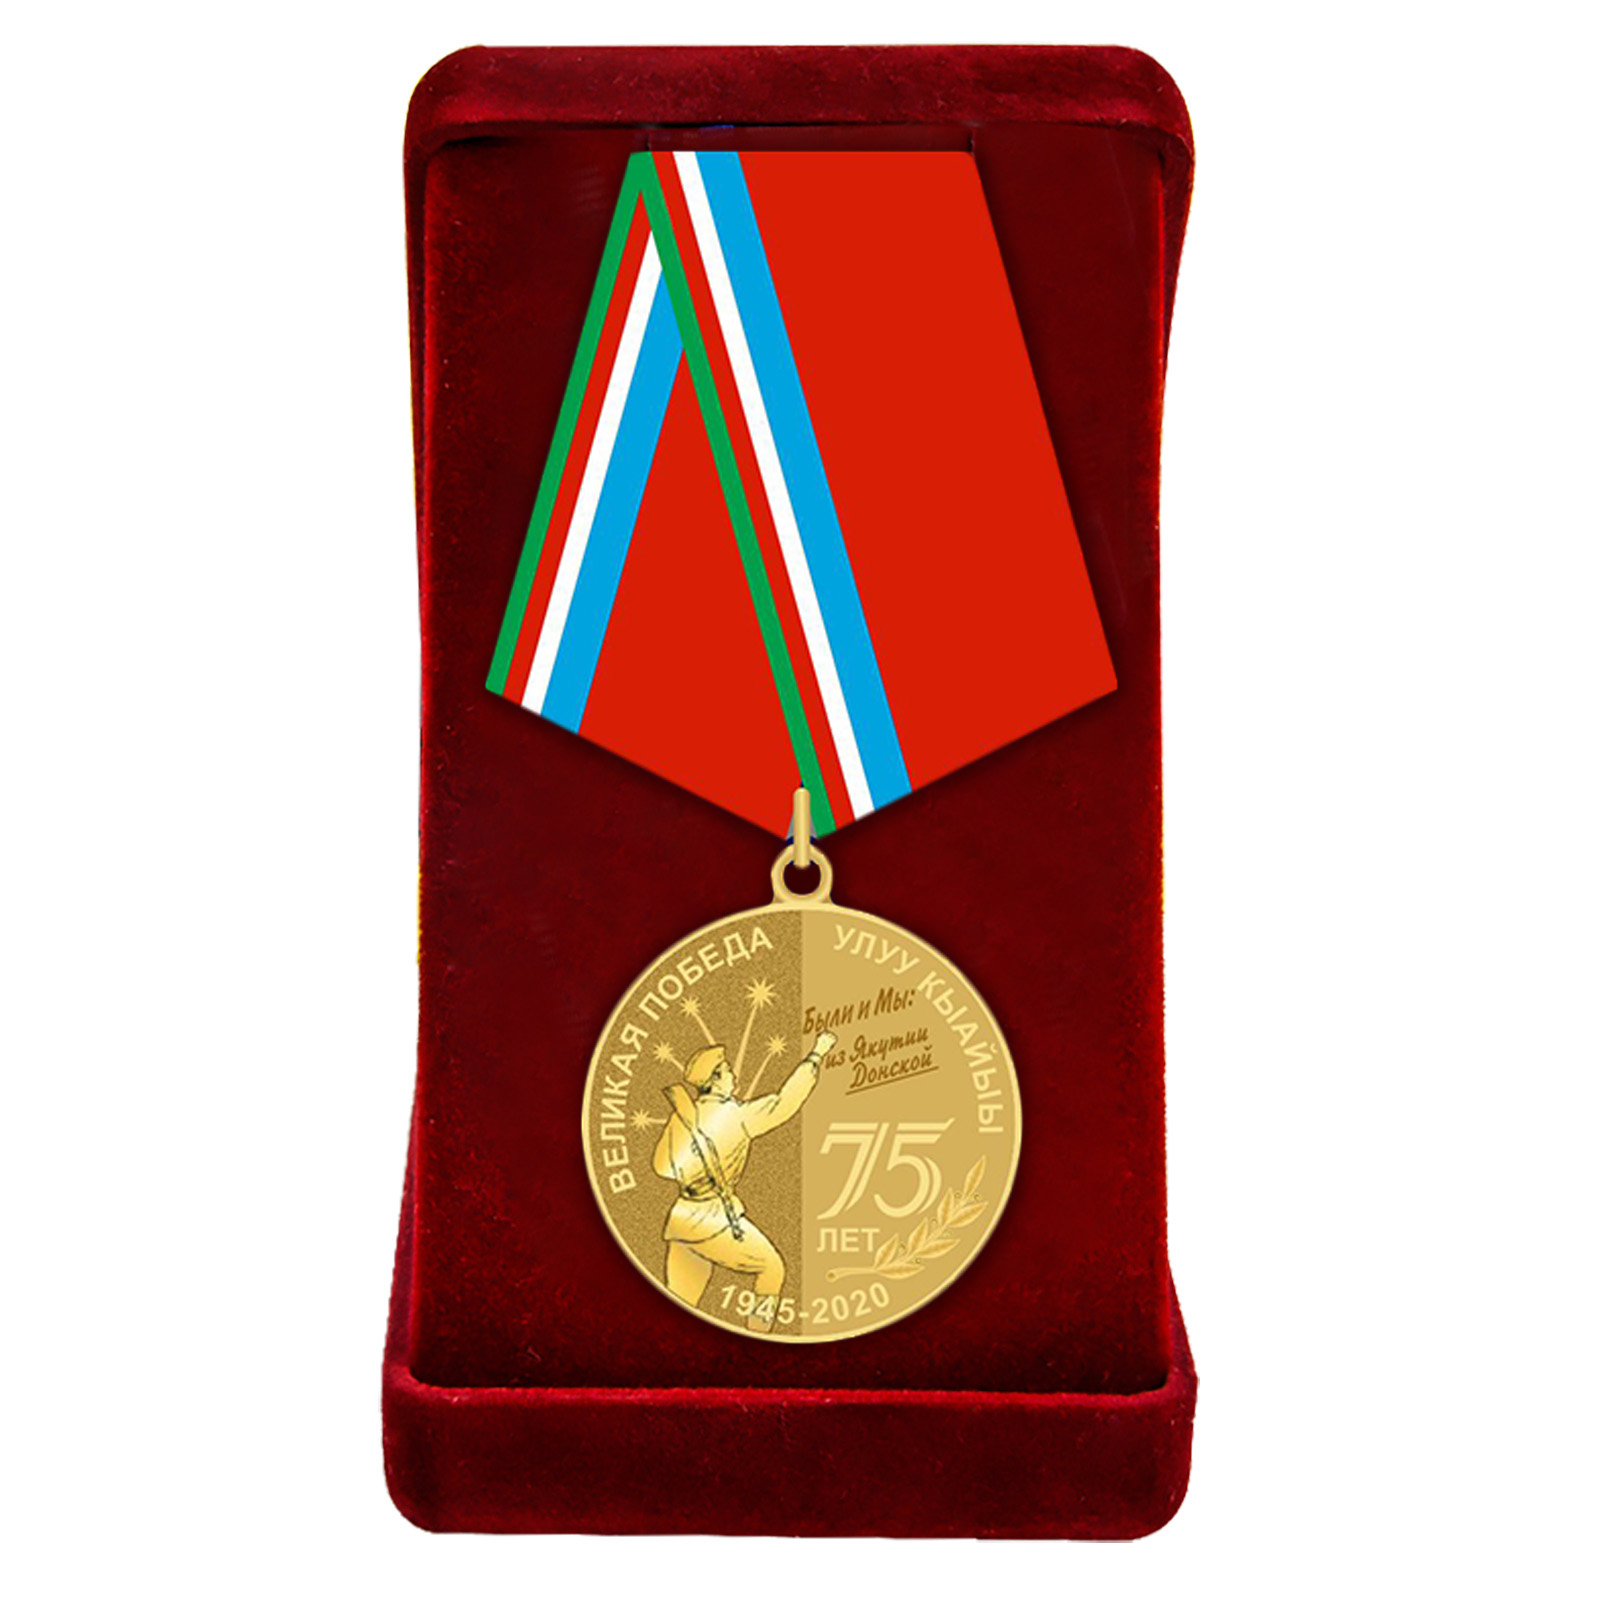 Купить памятную медаль 75 лет Великой Победы Якутия по экономичной цене